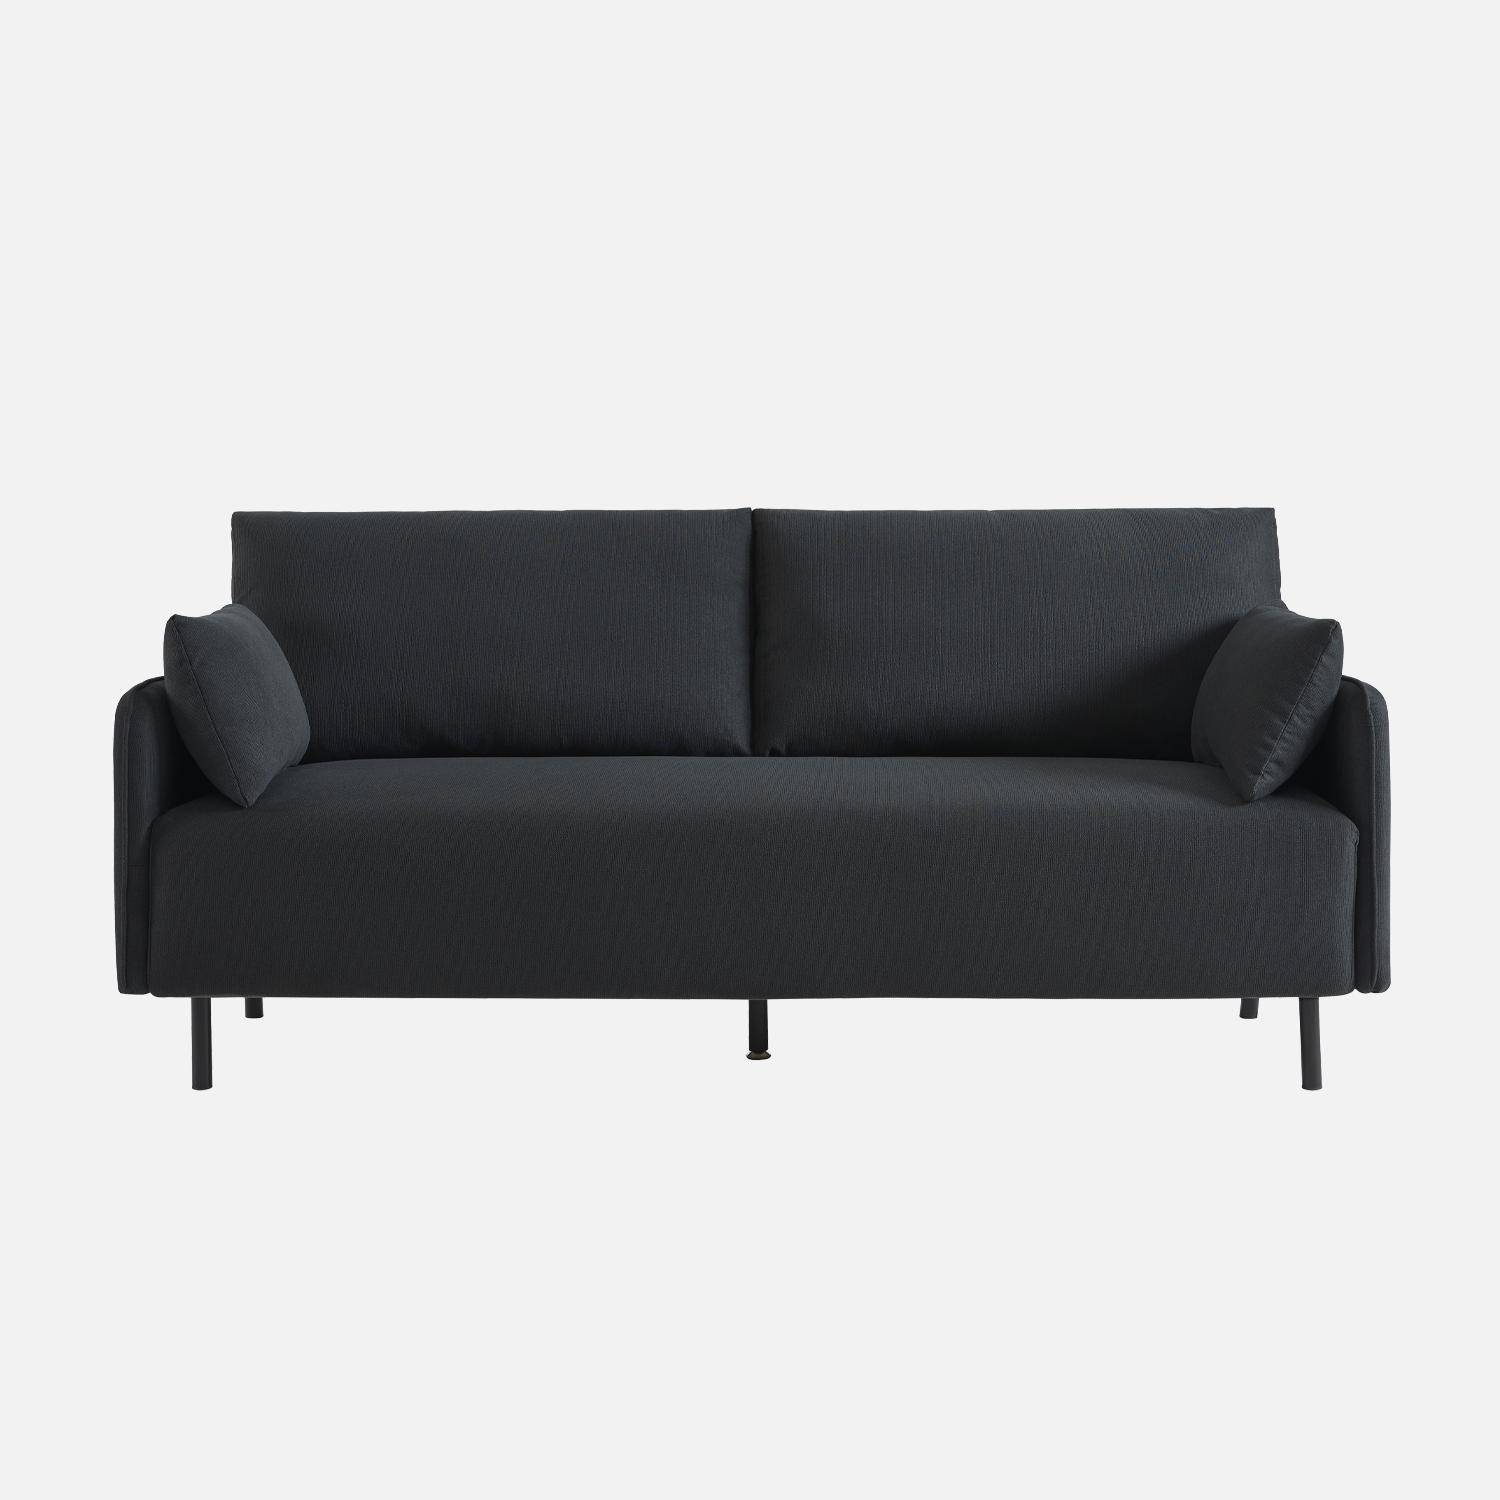  3-Sitzer-Sofa mit wasserabweisendem anthrazitfarbenem Bezug und schwarzen Metallfüßen Photo4